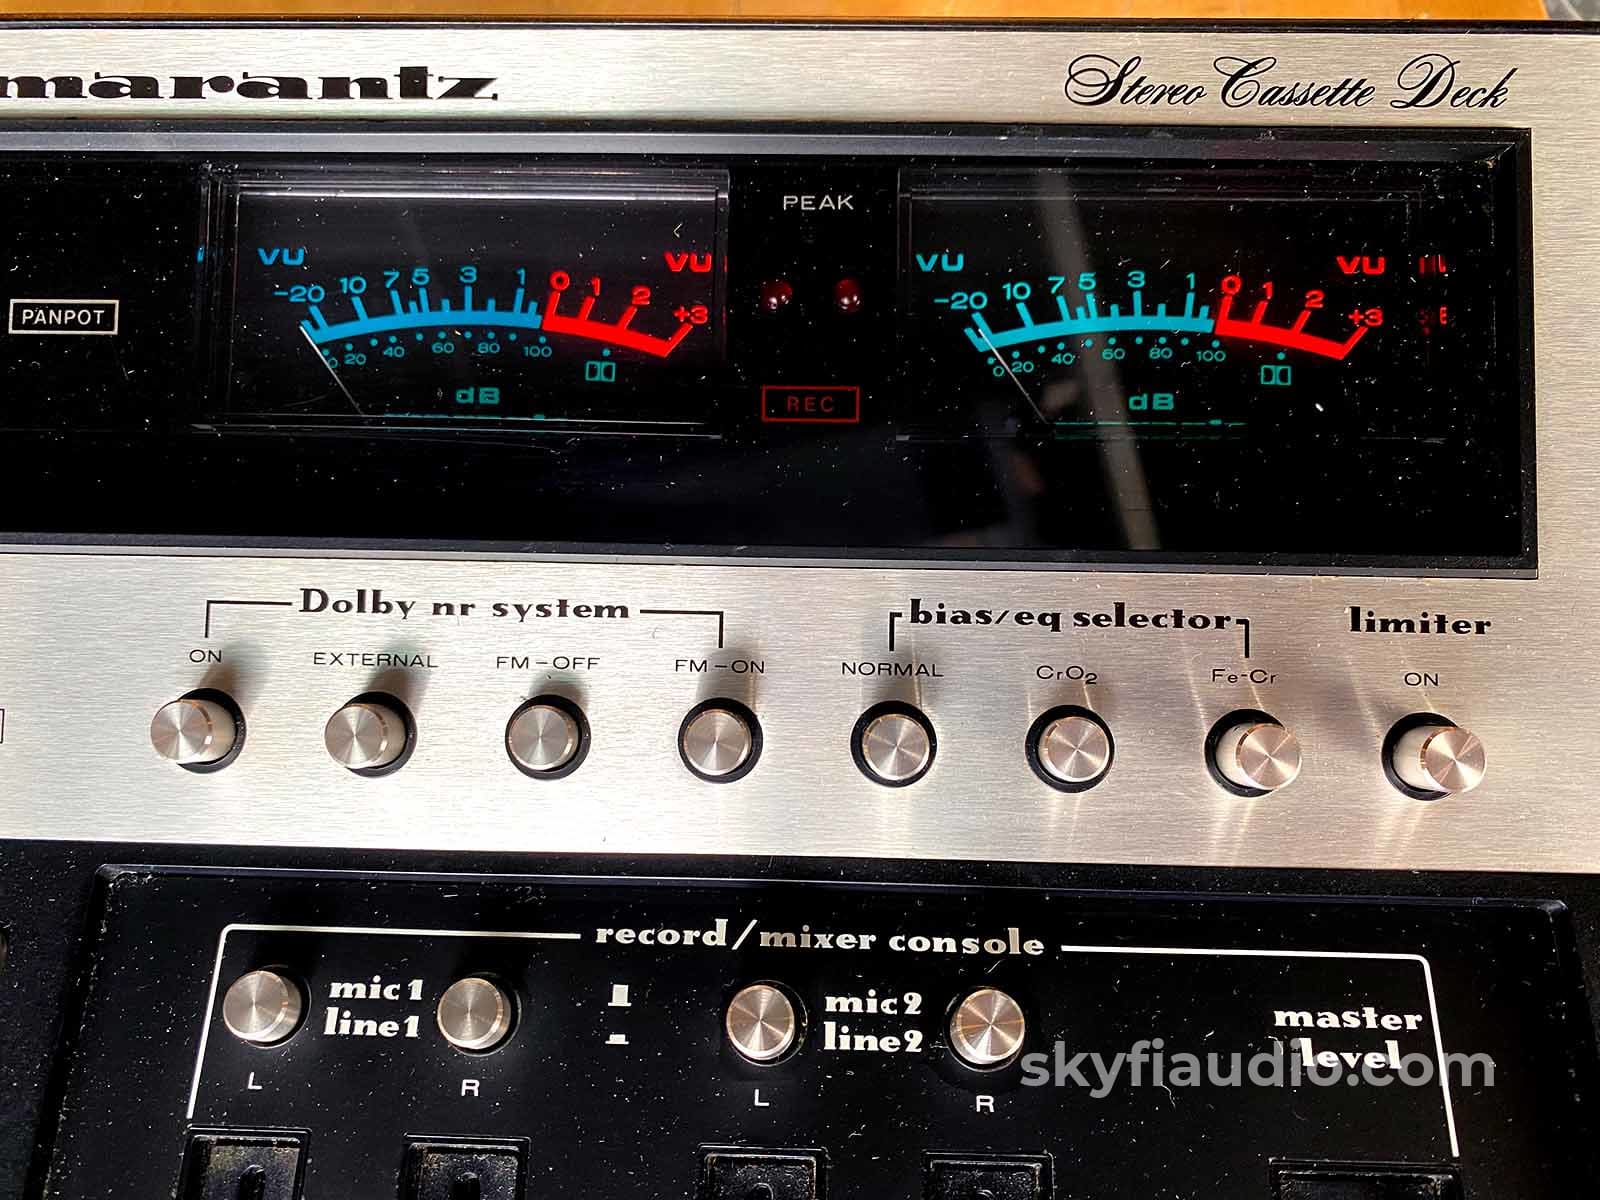 Marantz Model 5420 Tape Deck W/Vu Meters And 4-Ch Mixer